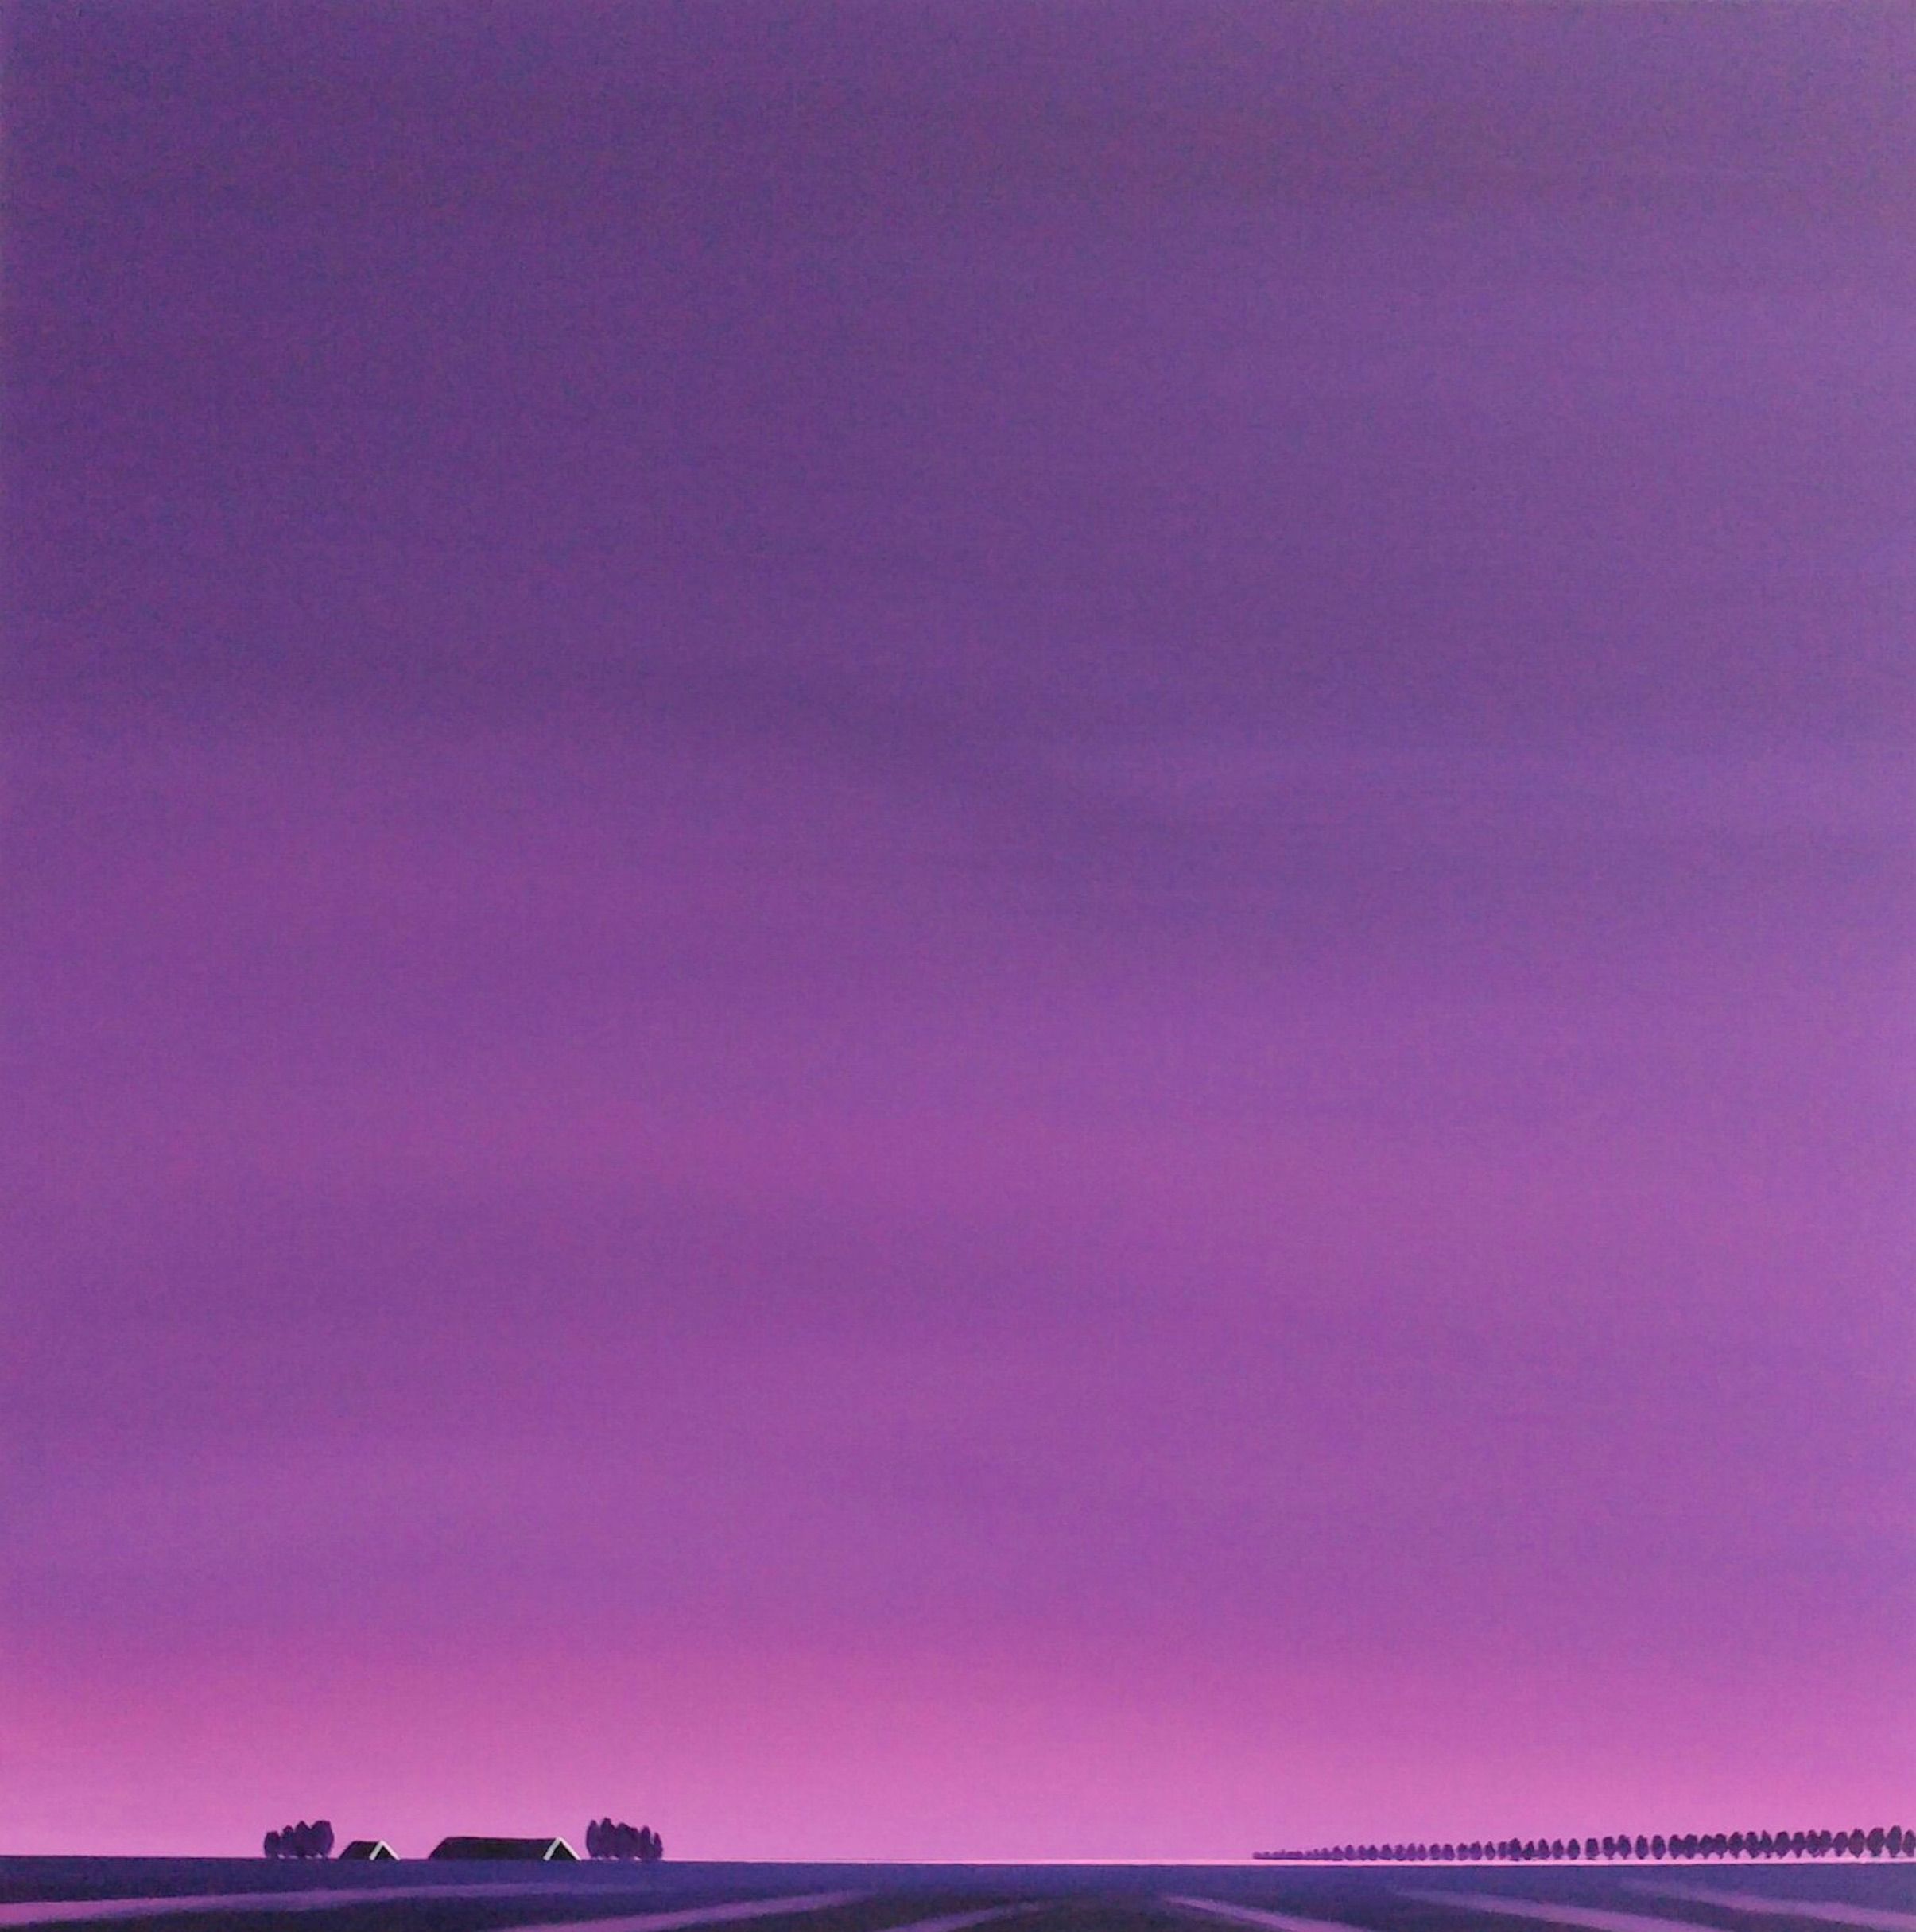 El cuadro "Dageraad, adiós a la noche" de Nelly van Nieuwenhuijzen muestra un paisaje de Zelanda. El cielo púrpura, un amanecer púrpura rosáceo reflejado en las huellas de la tierra y los tejados oscuros, es intenso, casi sobrecogedor